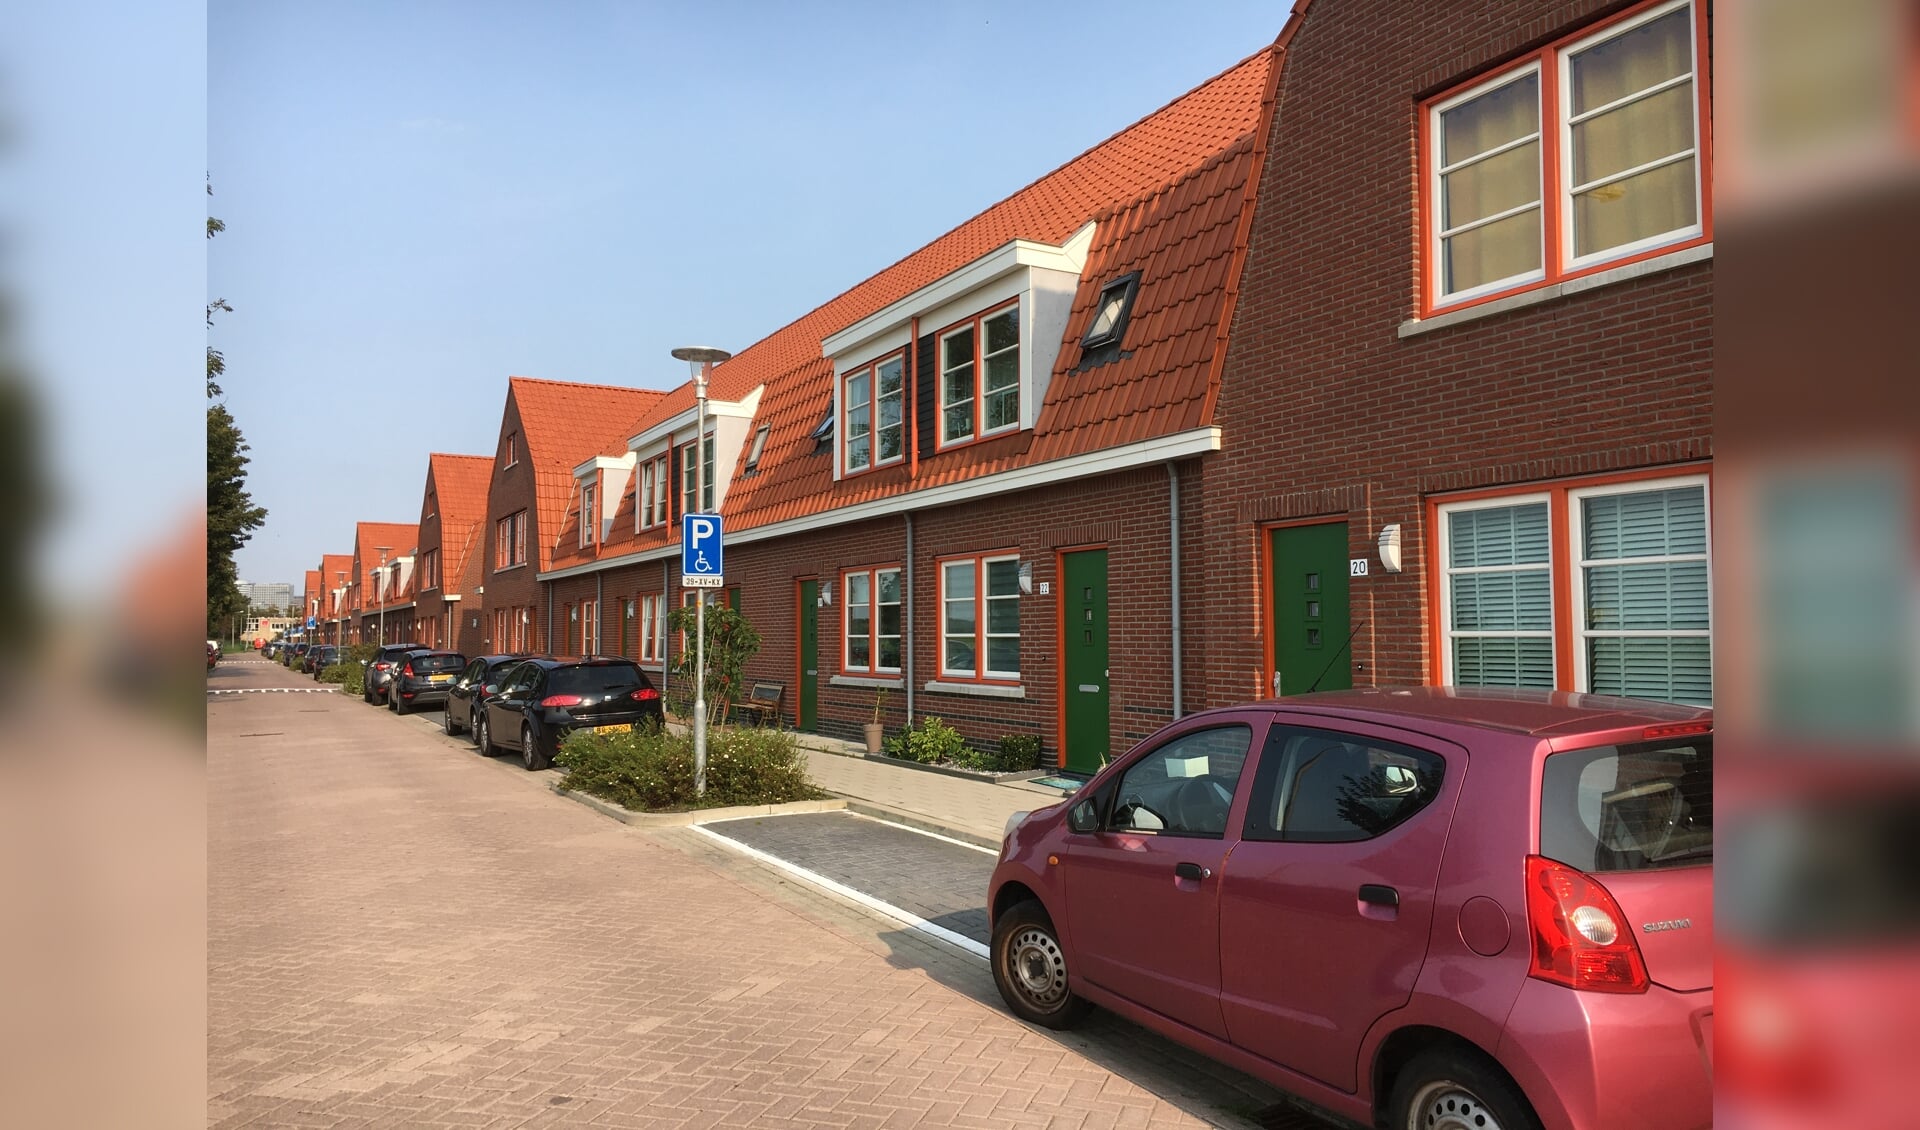 Nieuwbouw huurwoningen Eigen Haard aan de Burgemeester Stramanweg in Ouderkerk.